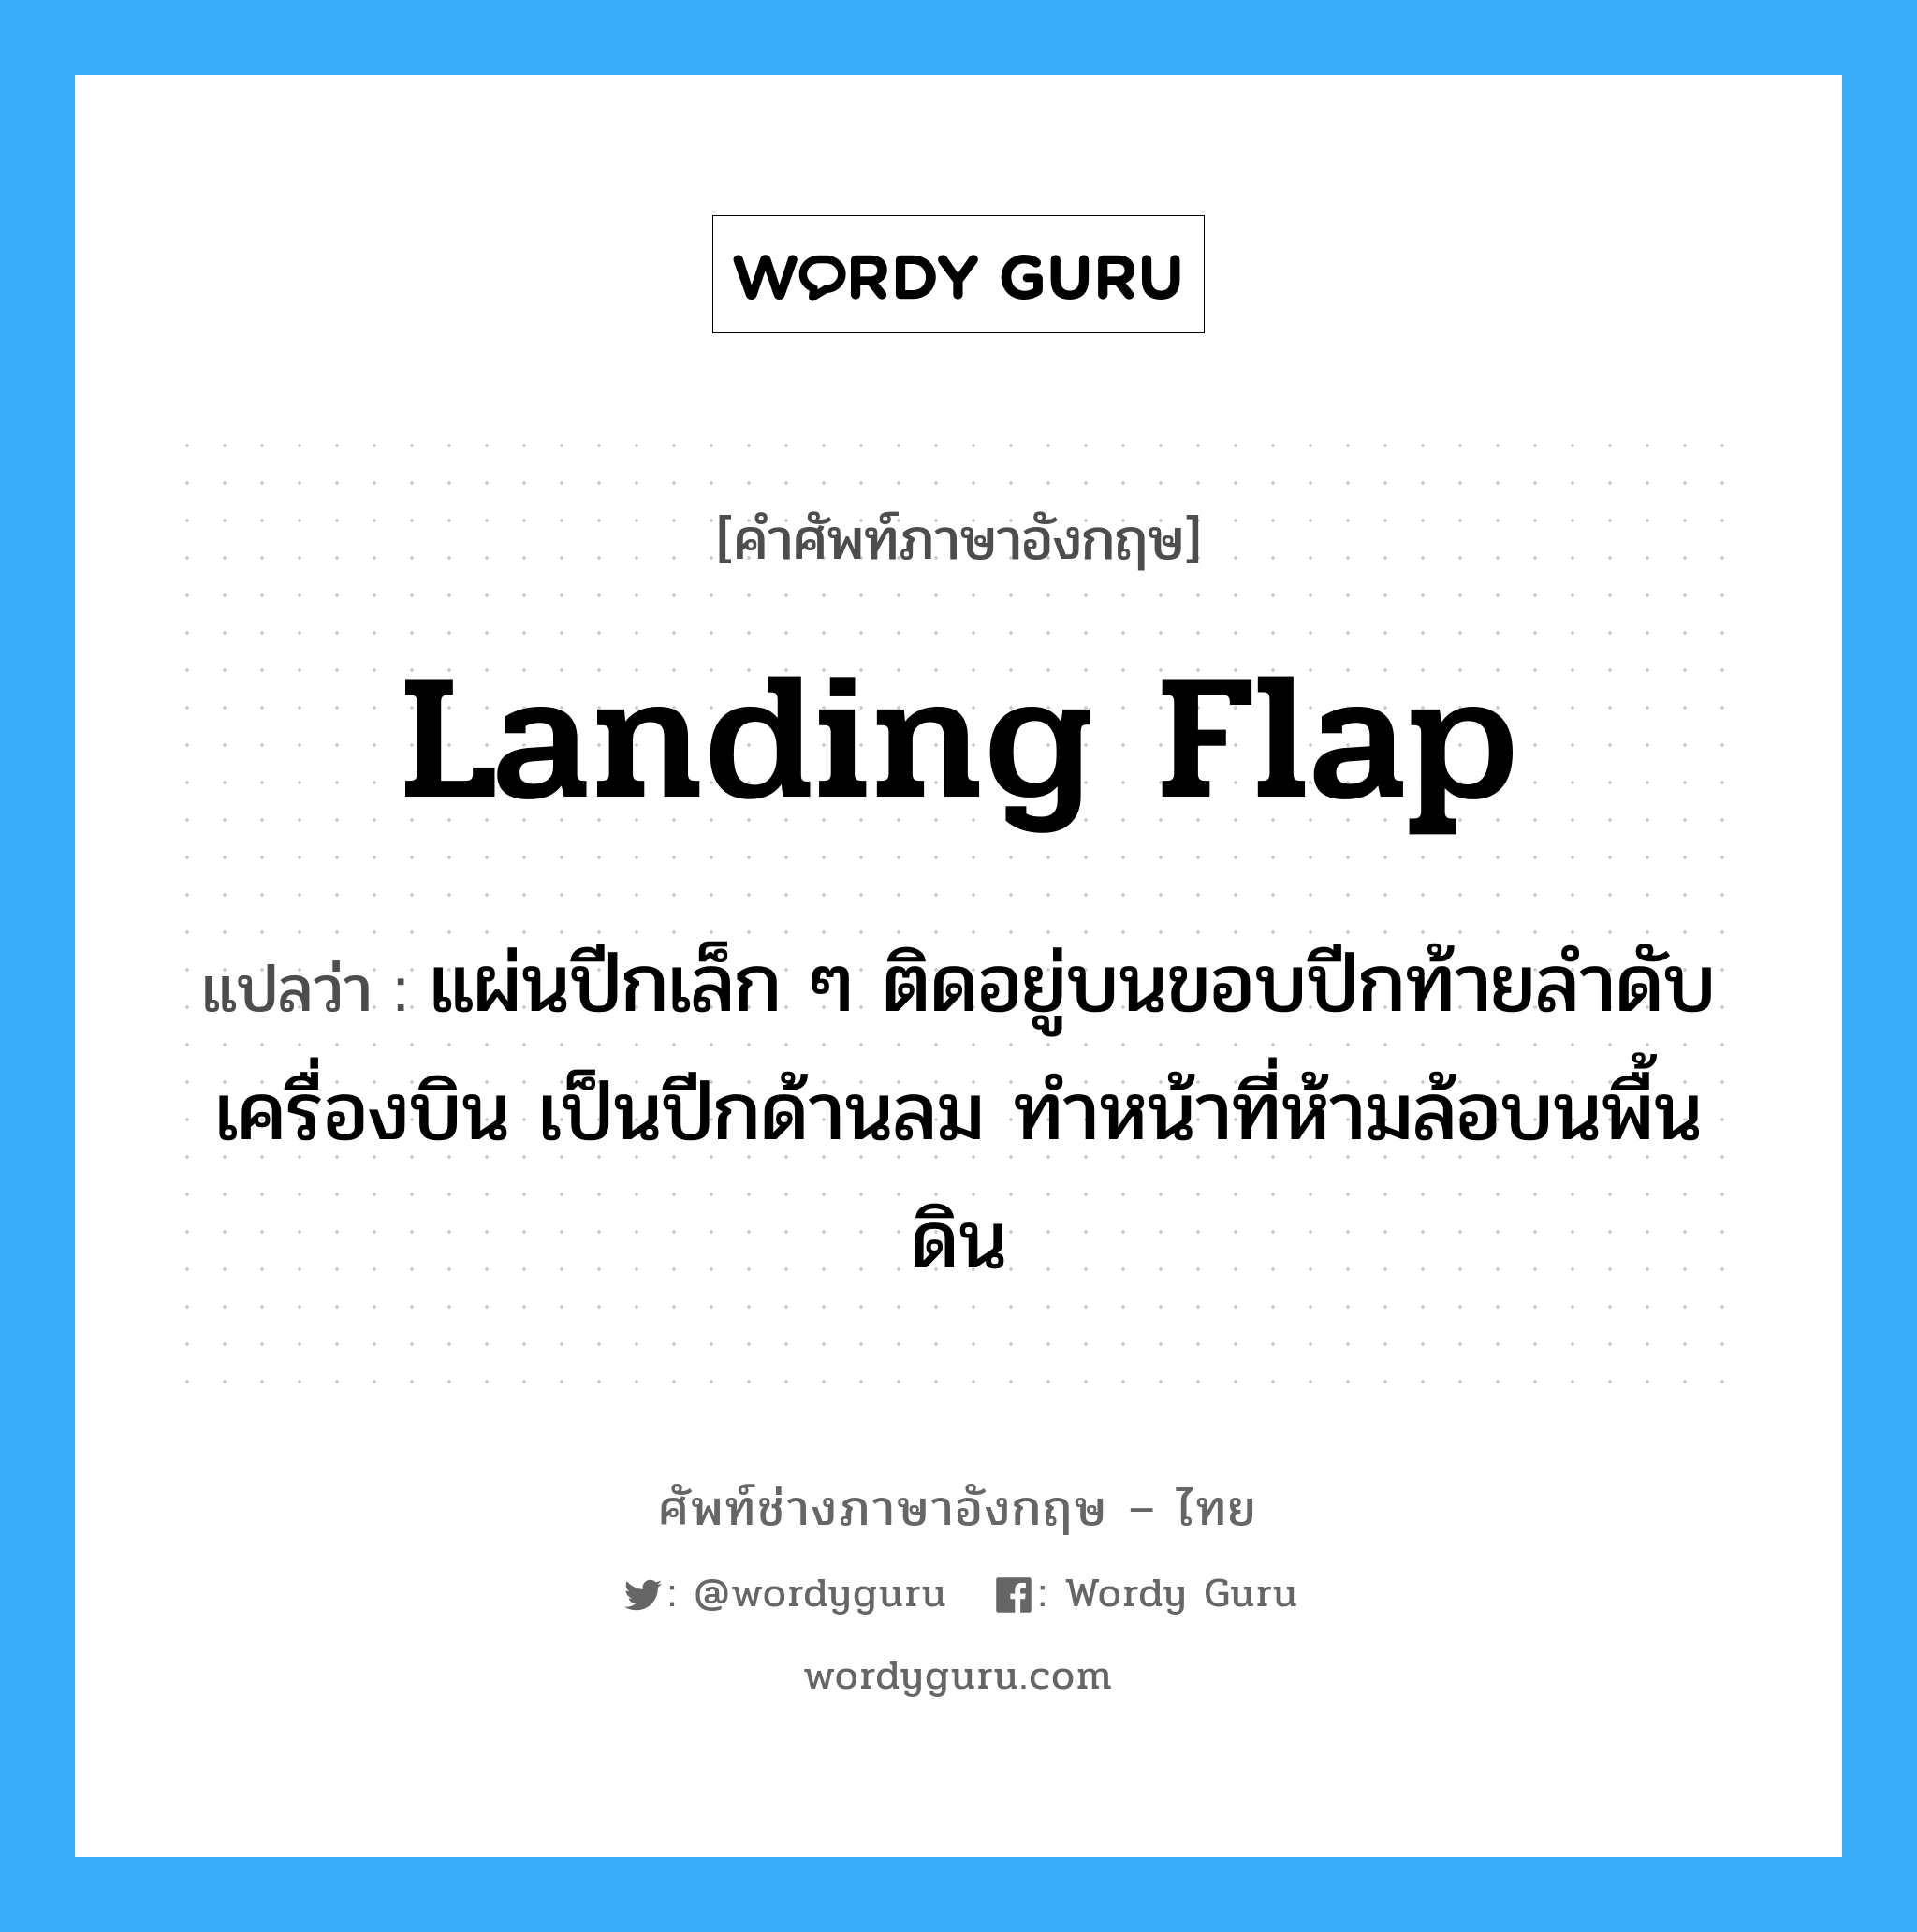 landing flap แปลว่า?, คำศัพท์ช่างภาษาอังกฤษ - ไทย landing flap คำศัพท์ภาษาอังกฤษ landing flap แปลว่า แผ่นปีกเล็ก ๆ ติดอยู่บนขอบปีกท้ายลำดับเครื่องบิน เป็นปีกด้านลม ทำหน้าที่ห้ามล้อบนพื้นดิน